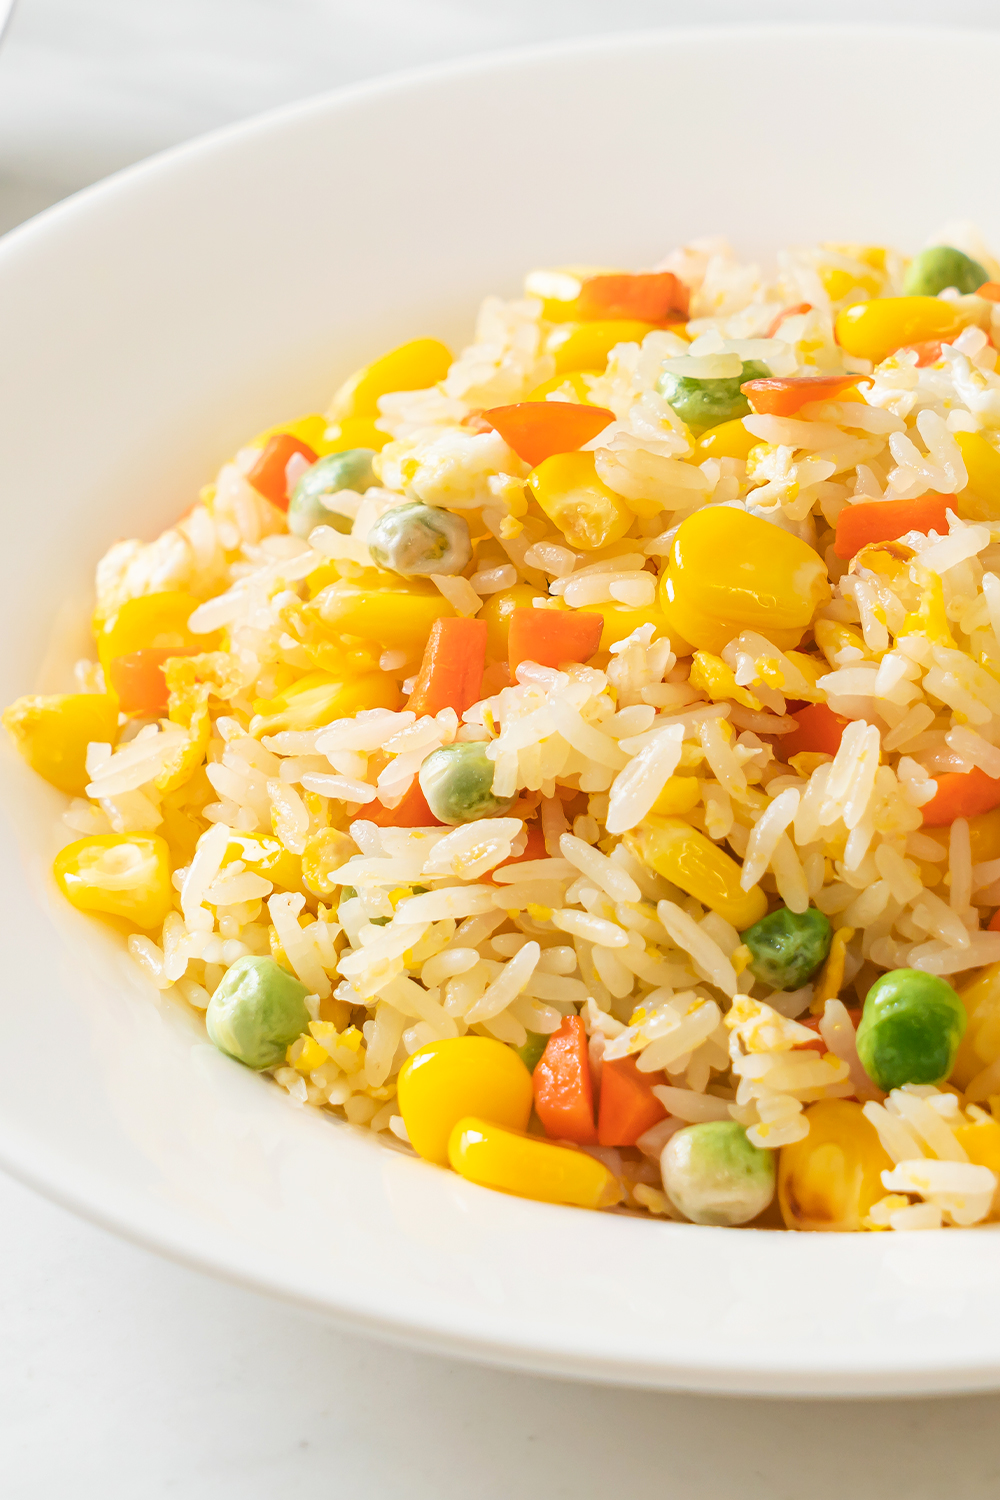 poste no pinterest esta imagem de receita de arroz-chop-suey